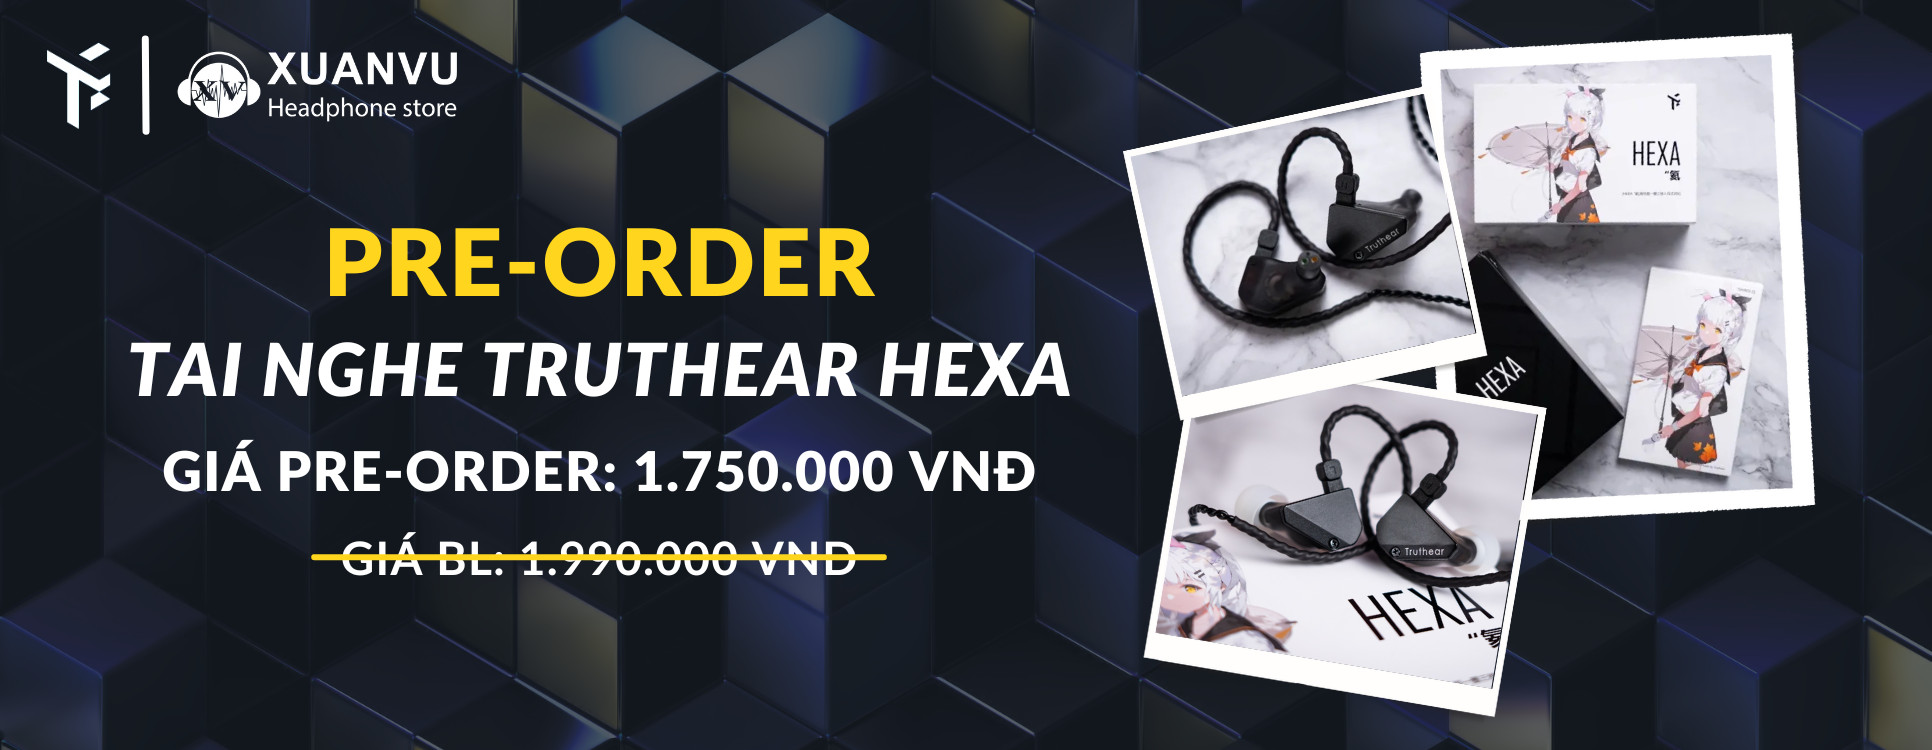 Pre-order tai nghe Truthear Hexa